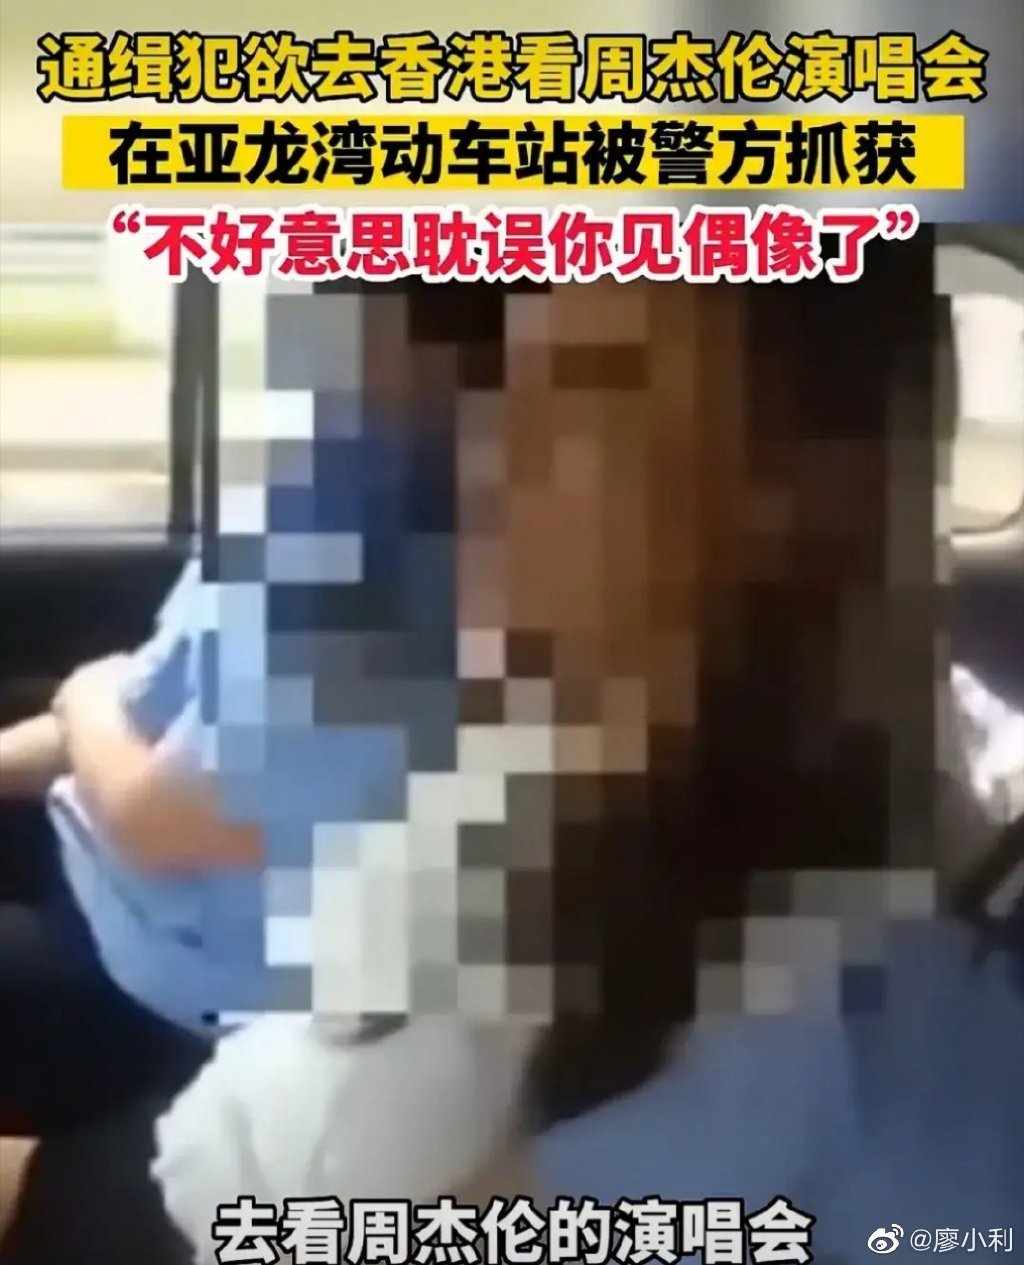 她向警员表示要赶去香港看周杰伦演唱会。